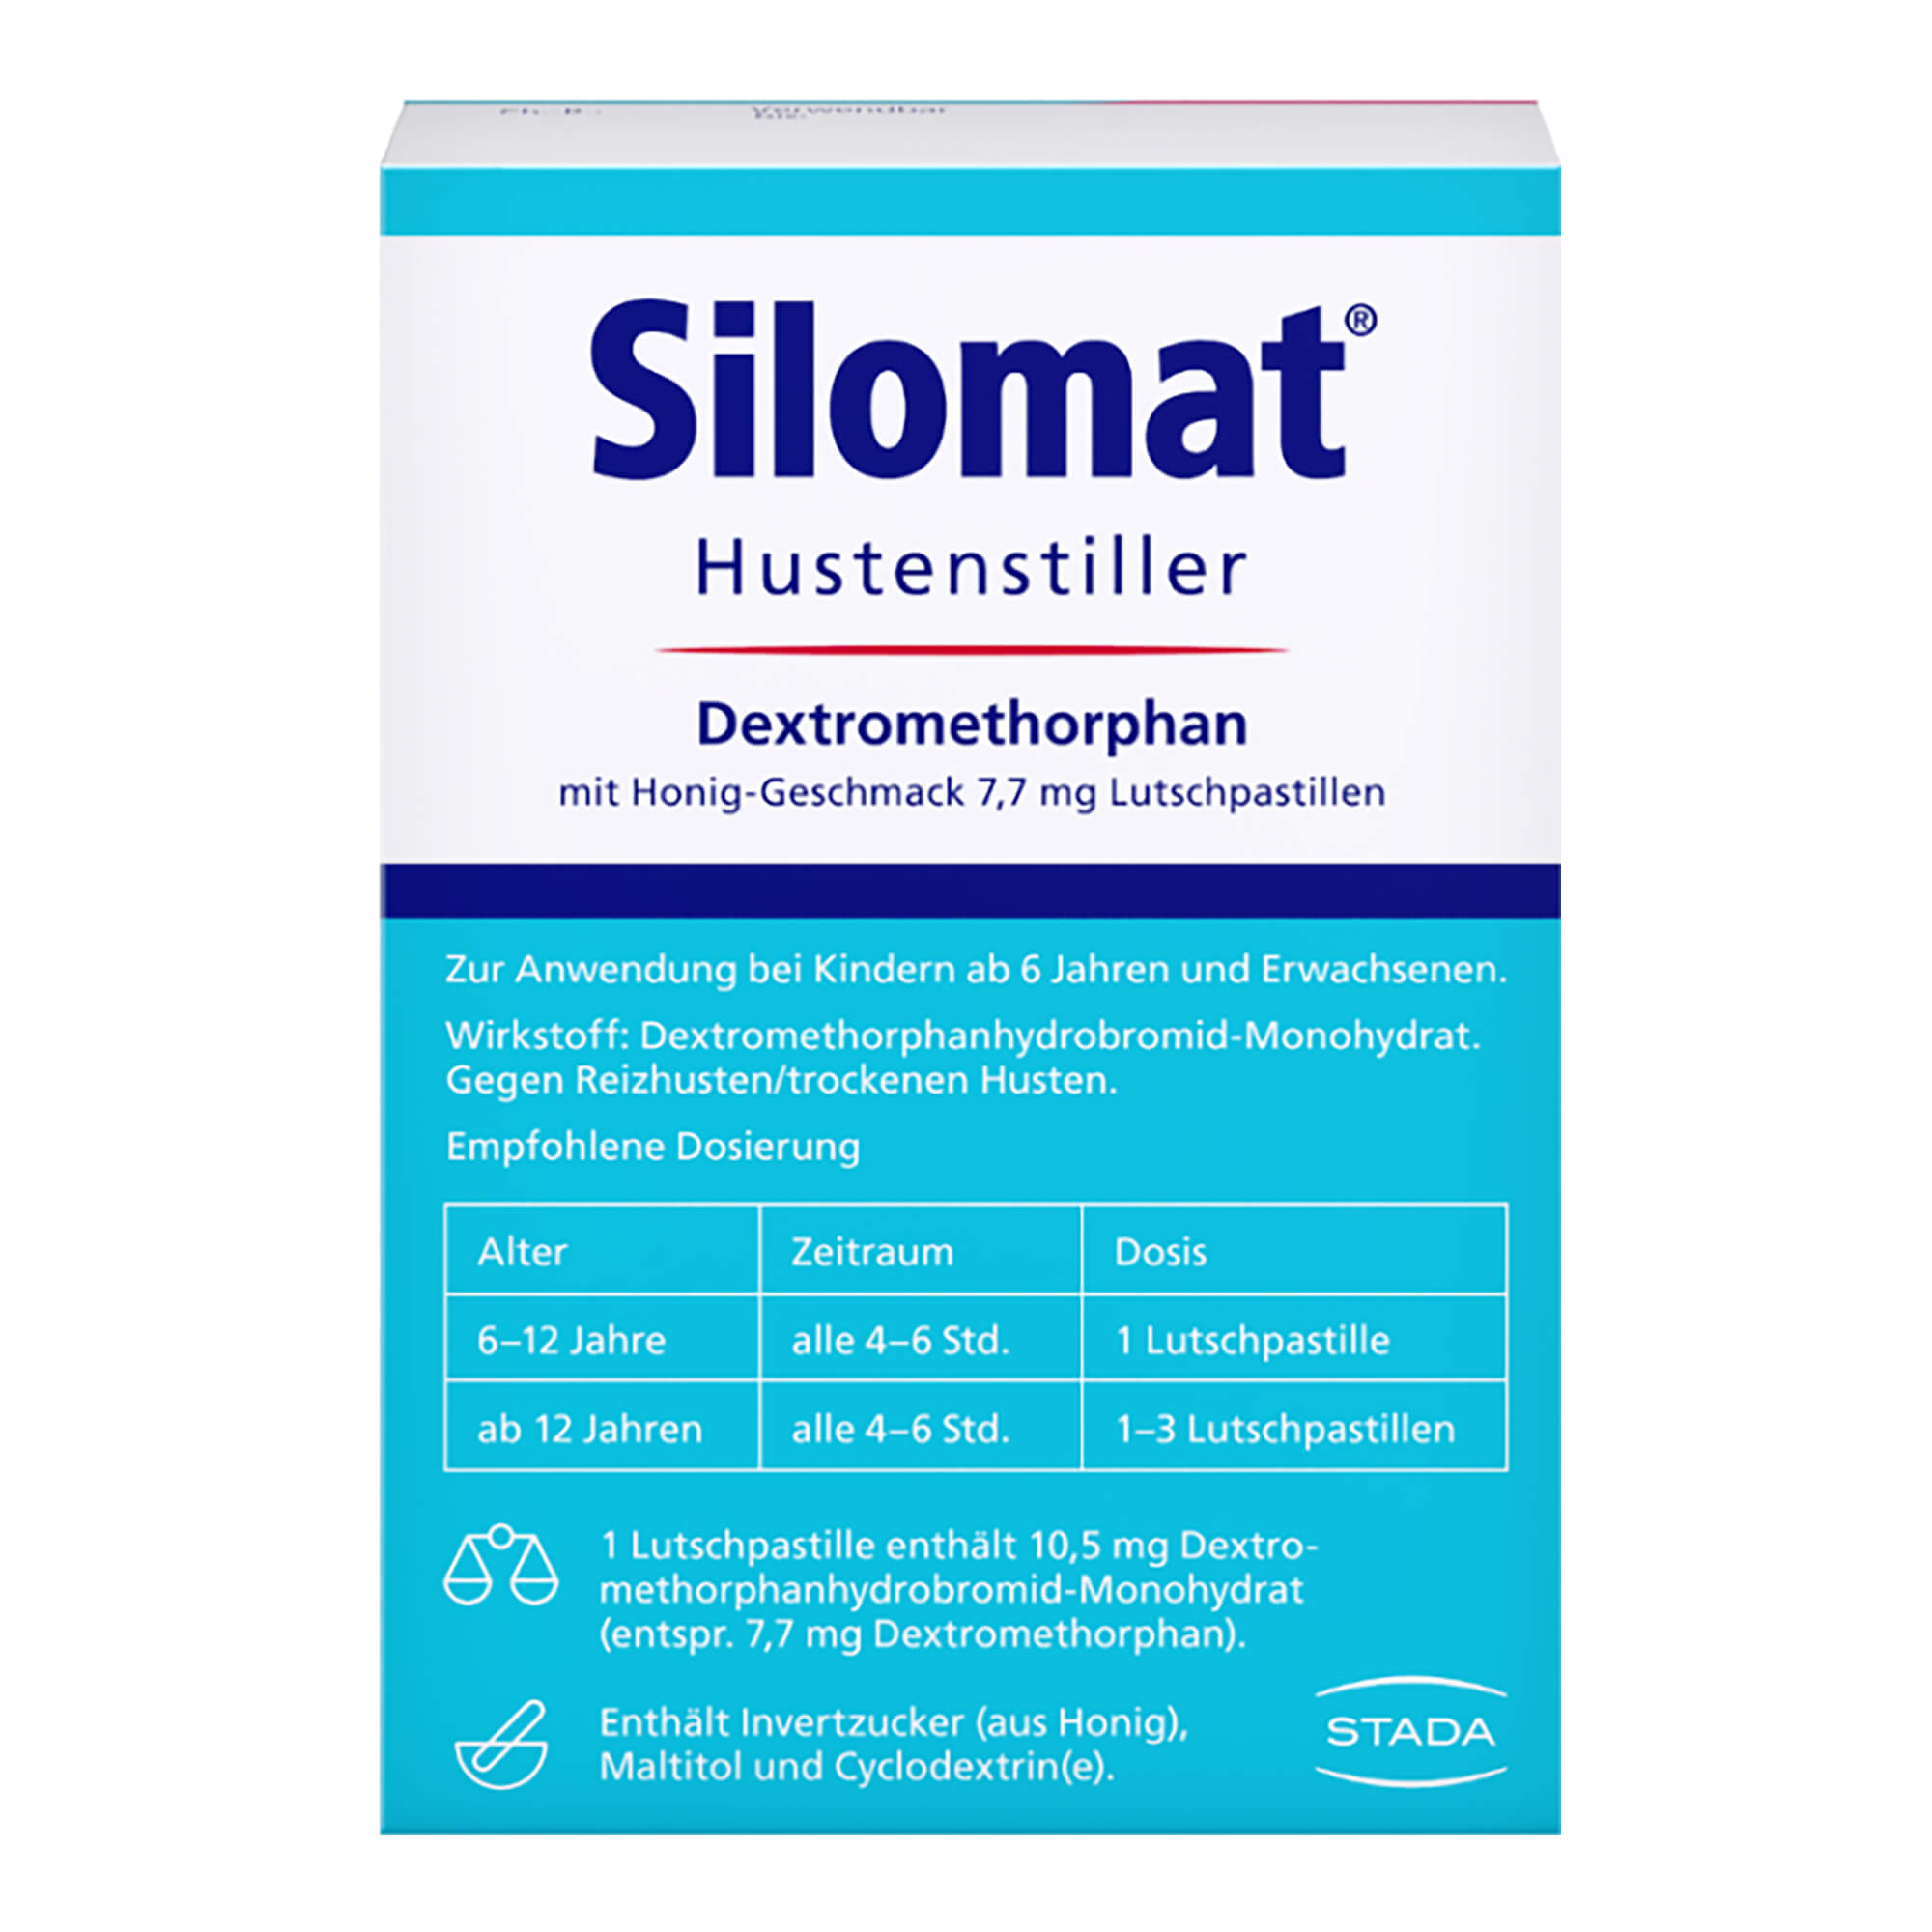 Silomat Hustenstiller Dextromethorphan mit Honig-Geschmack 7,7 mg Lutschpastillen Packungsrückseite